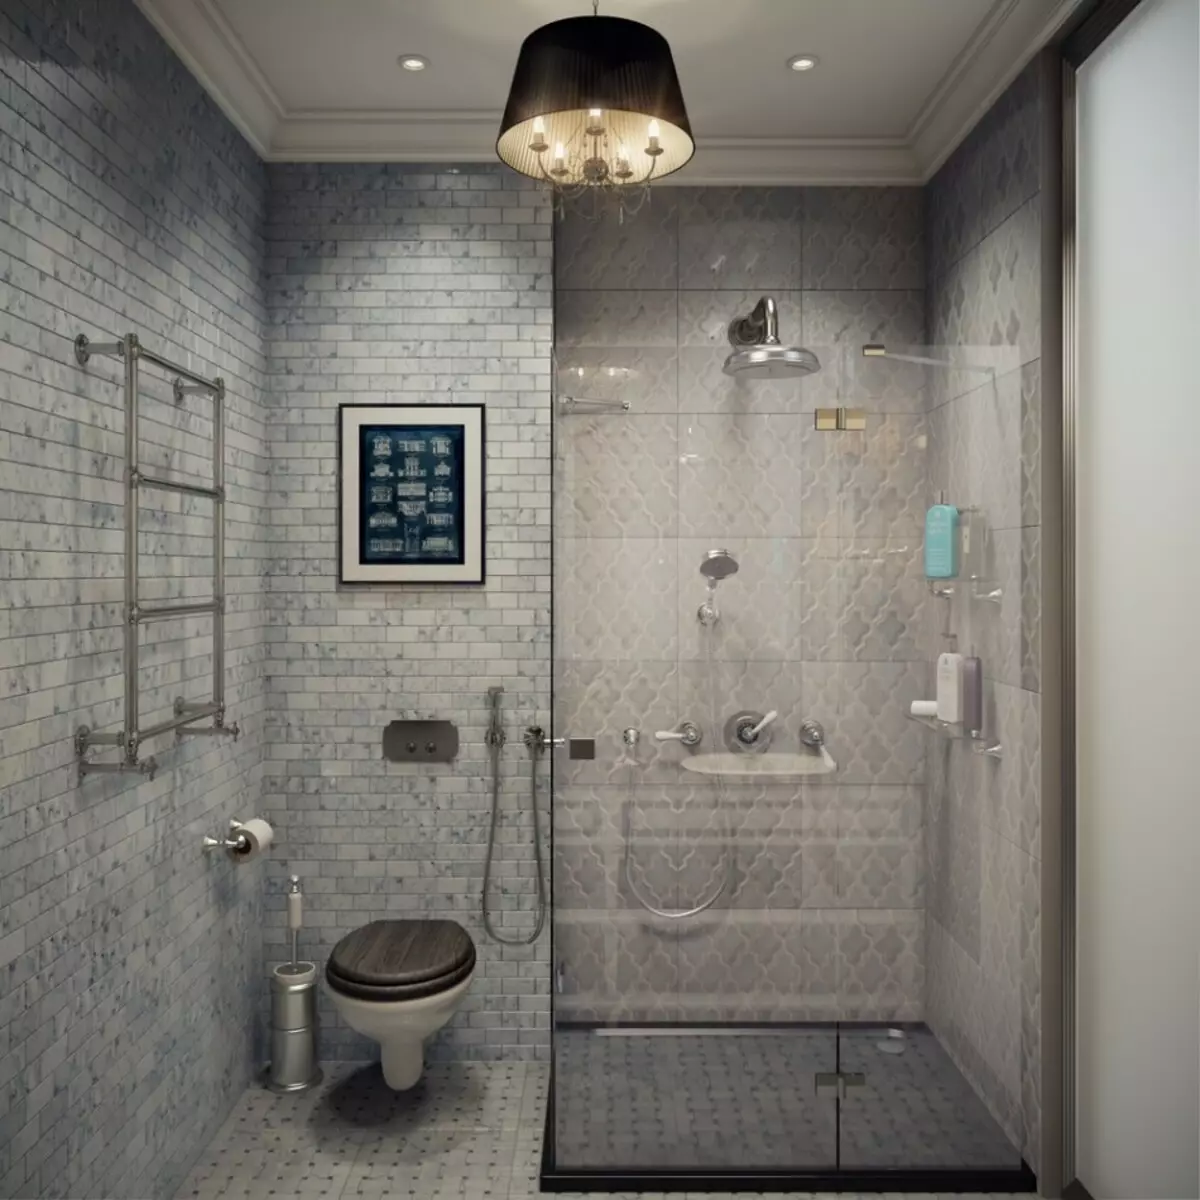 עיצוב אמבטיה בשילוב עם שירותים מרובע 3. M (76 תמונות): עיצוב פנים חדר אמבטיה עם מכונת כביסה, הנחת חדר קטן 10068_40